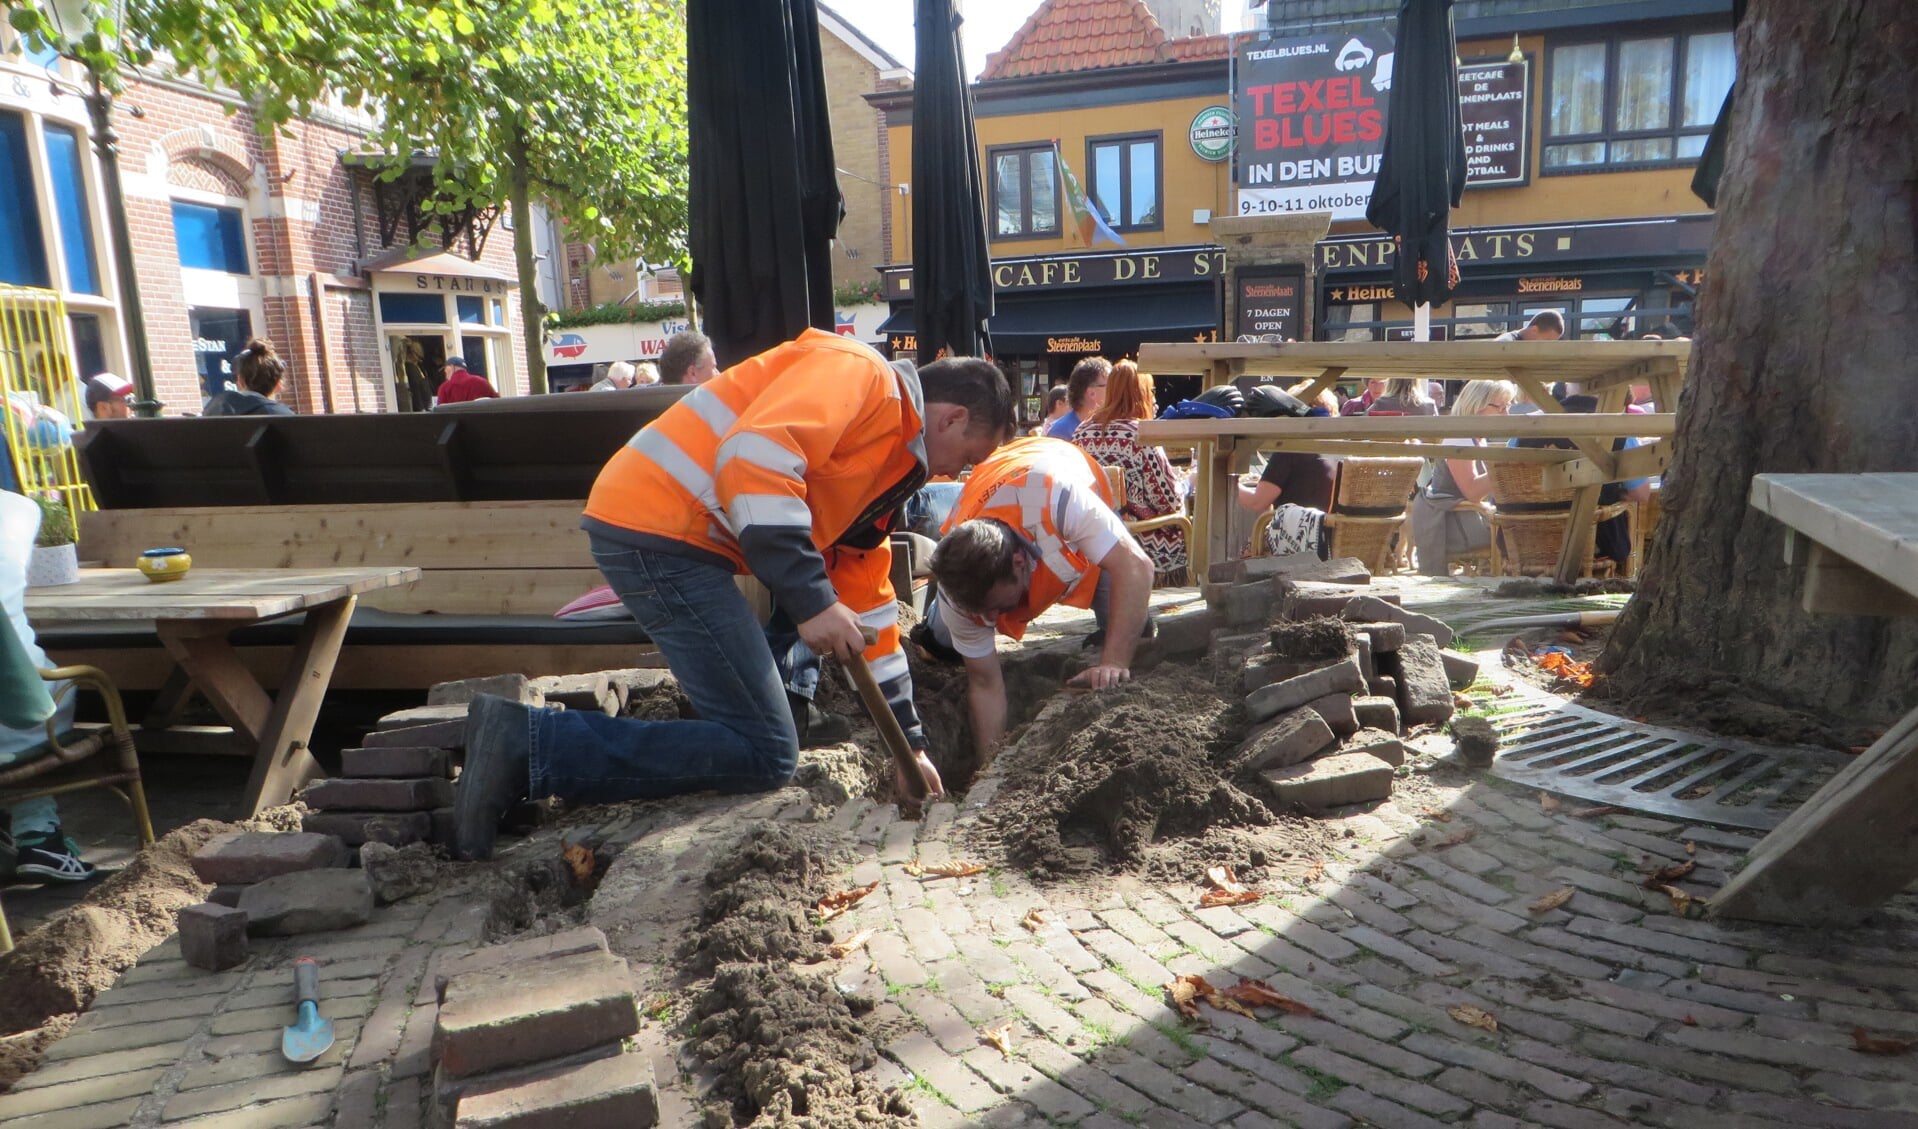 Deskundigen onderzoeken het wortelgestel van de kastanjeboom op de Stenenplaats. (Foto gemeente Texel)